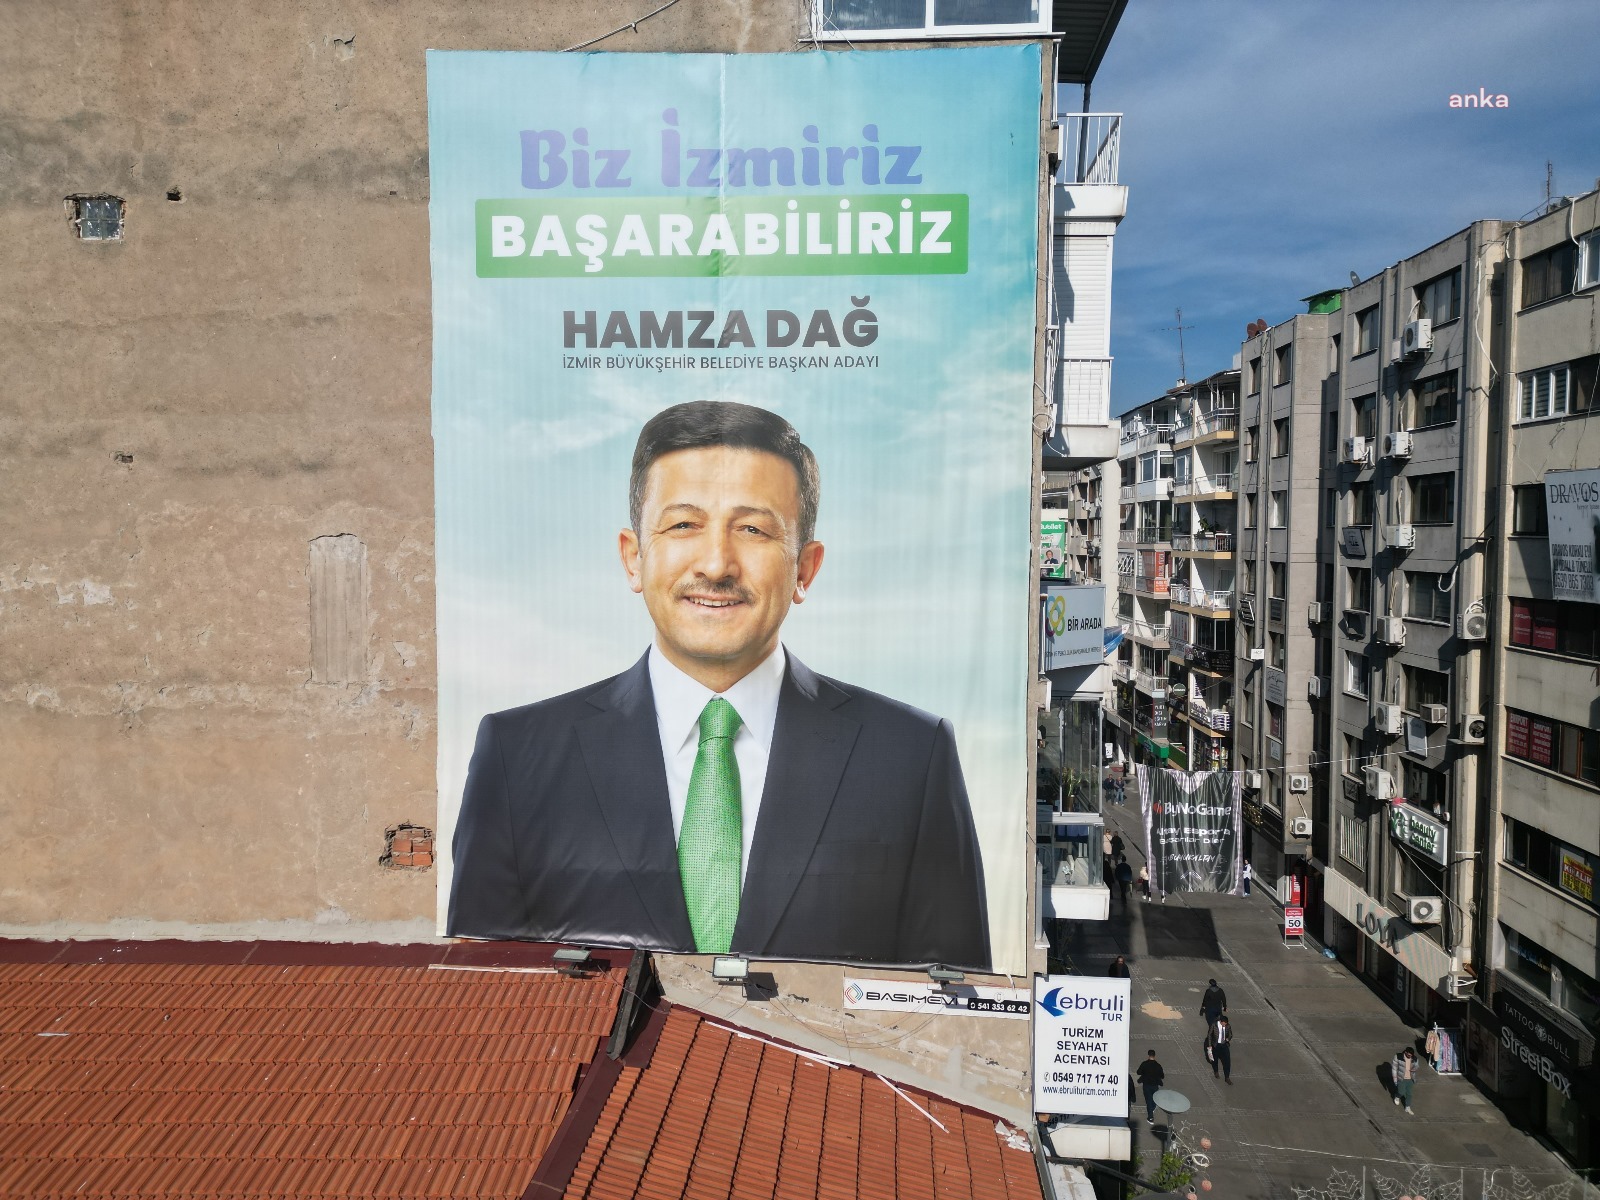 CHP İzmir’den, AKP’ye pankart göndermesi: Bu arkadaş hangi partinin adayı